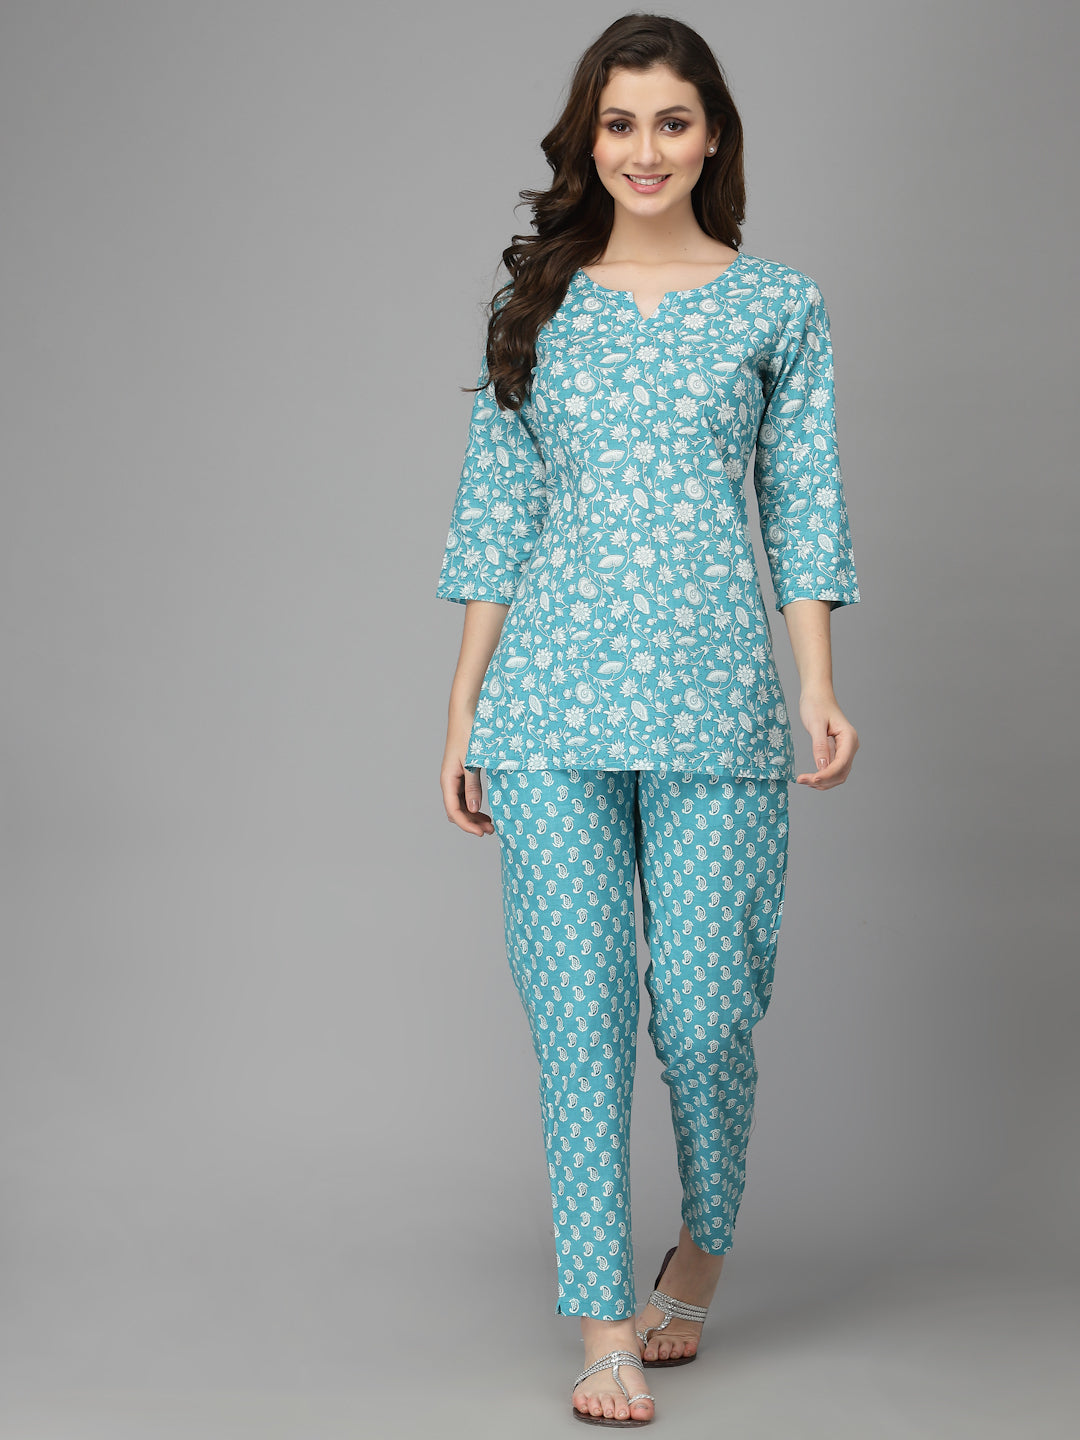 Women Top & Pyjama Set Aam Blue Printed